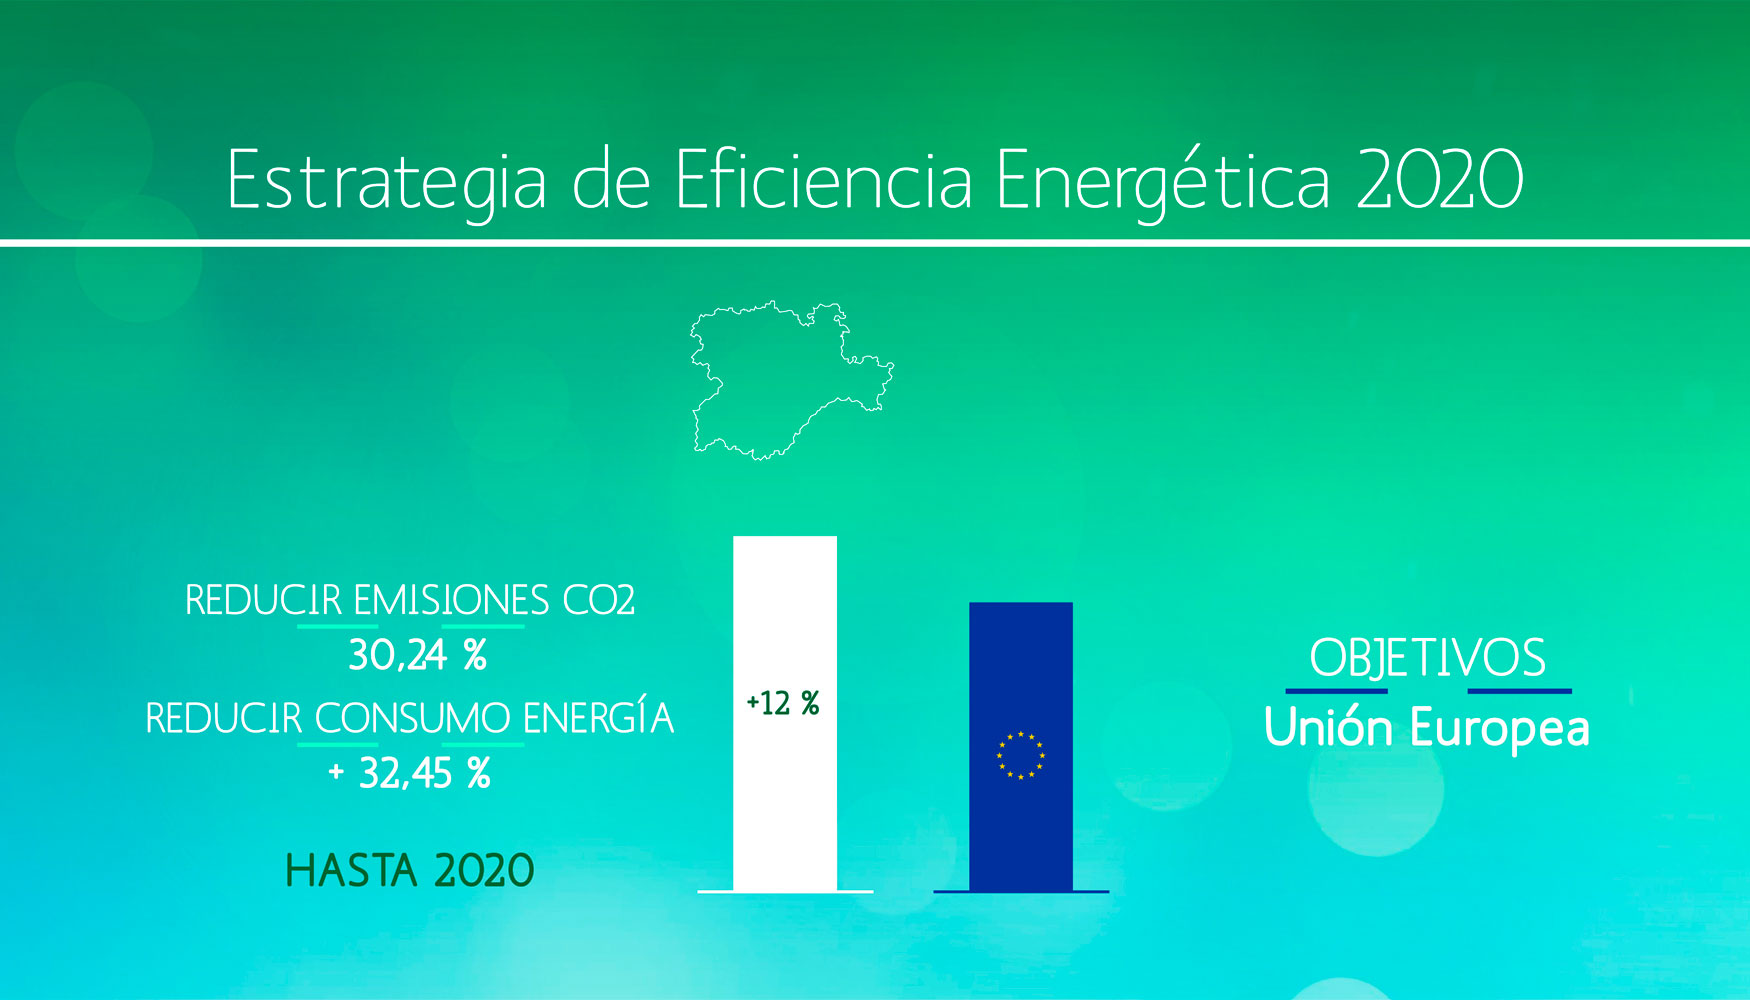 El desarrollo de la estrategia implicar reducir el consumo de energa un 32,45% y reducir las emisiones de CO2 en un 30,24% respecto al ao 1990...